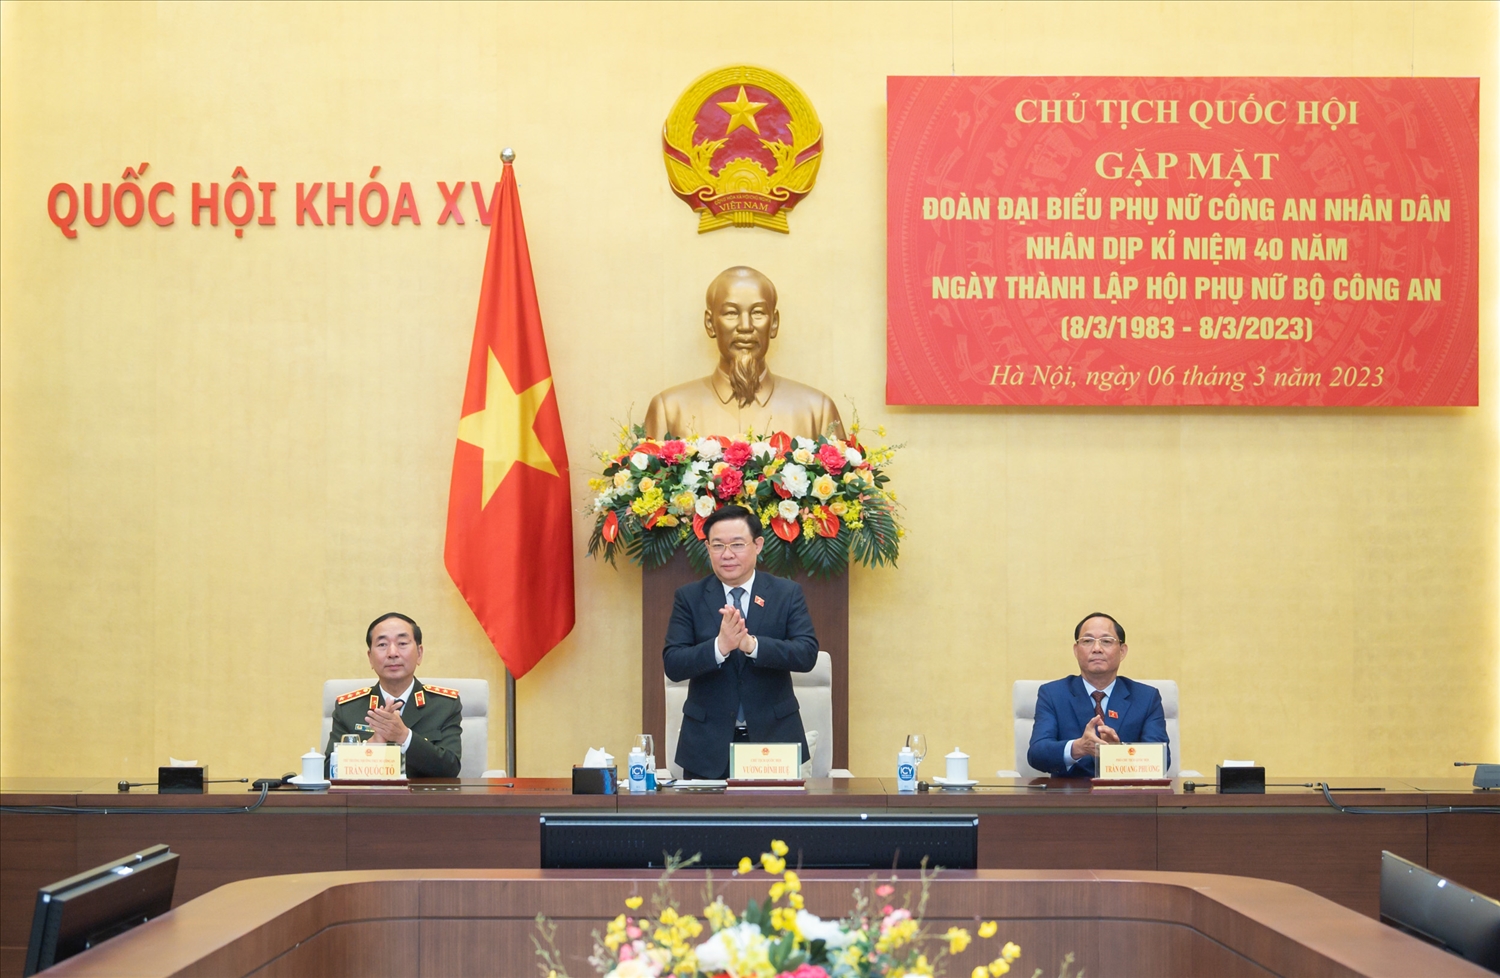 Chủ tịch Quốc hội Vương Đình Huệ, Phó Chủ tịch Quốc hội Trần Quang Phương và Thứ trưởng Bộ Công an Trần Quốc Tỏ tại buổi gặp mặt